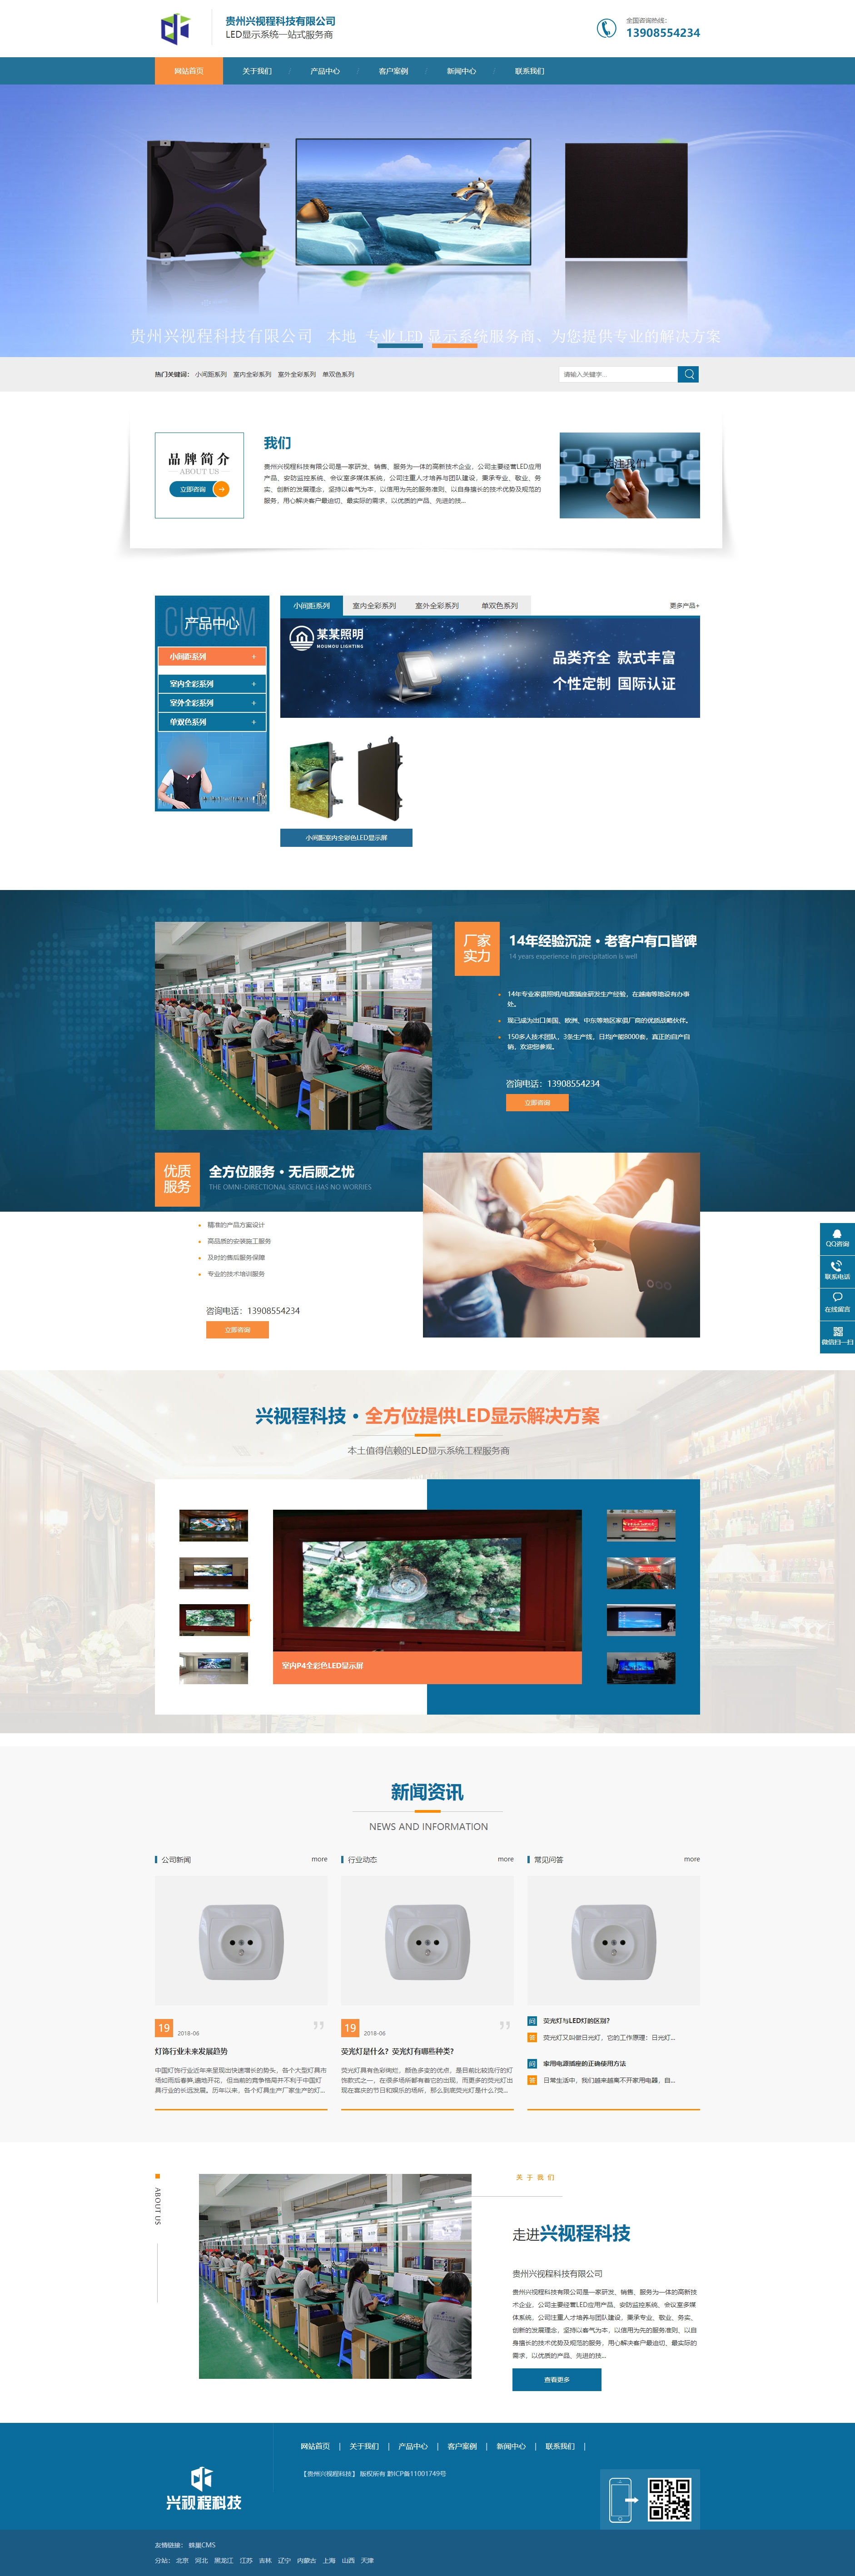 贵州贵州兴视程科技有限公司 网站正式上线